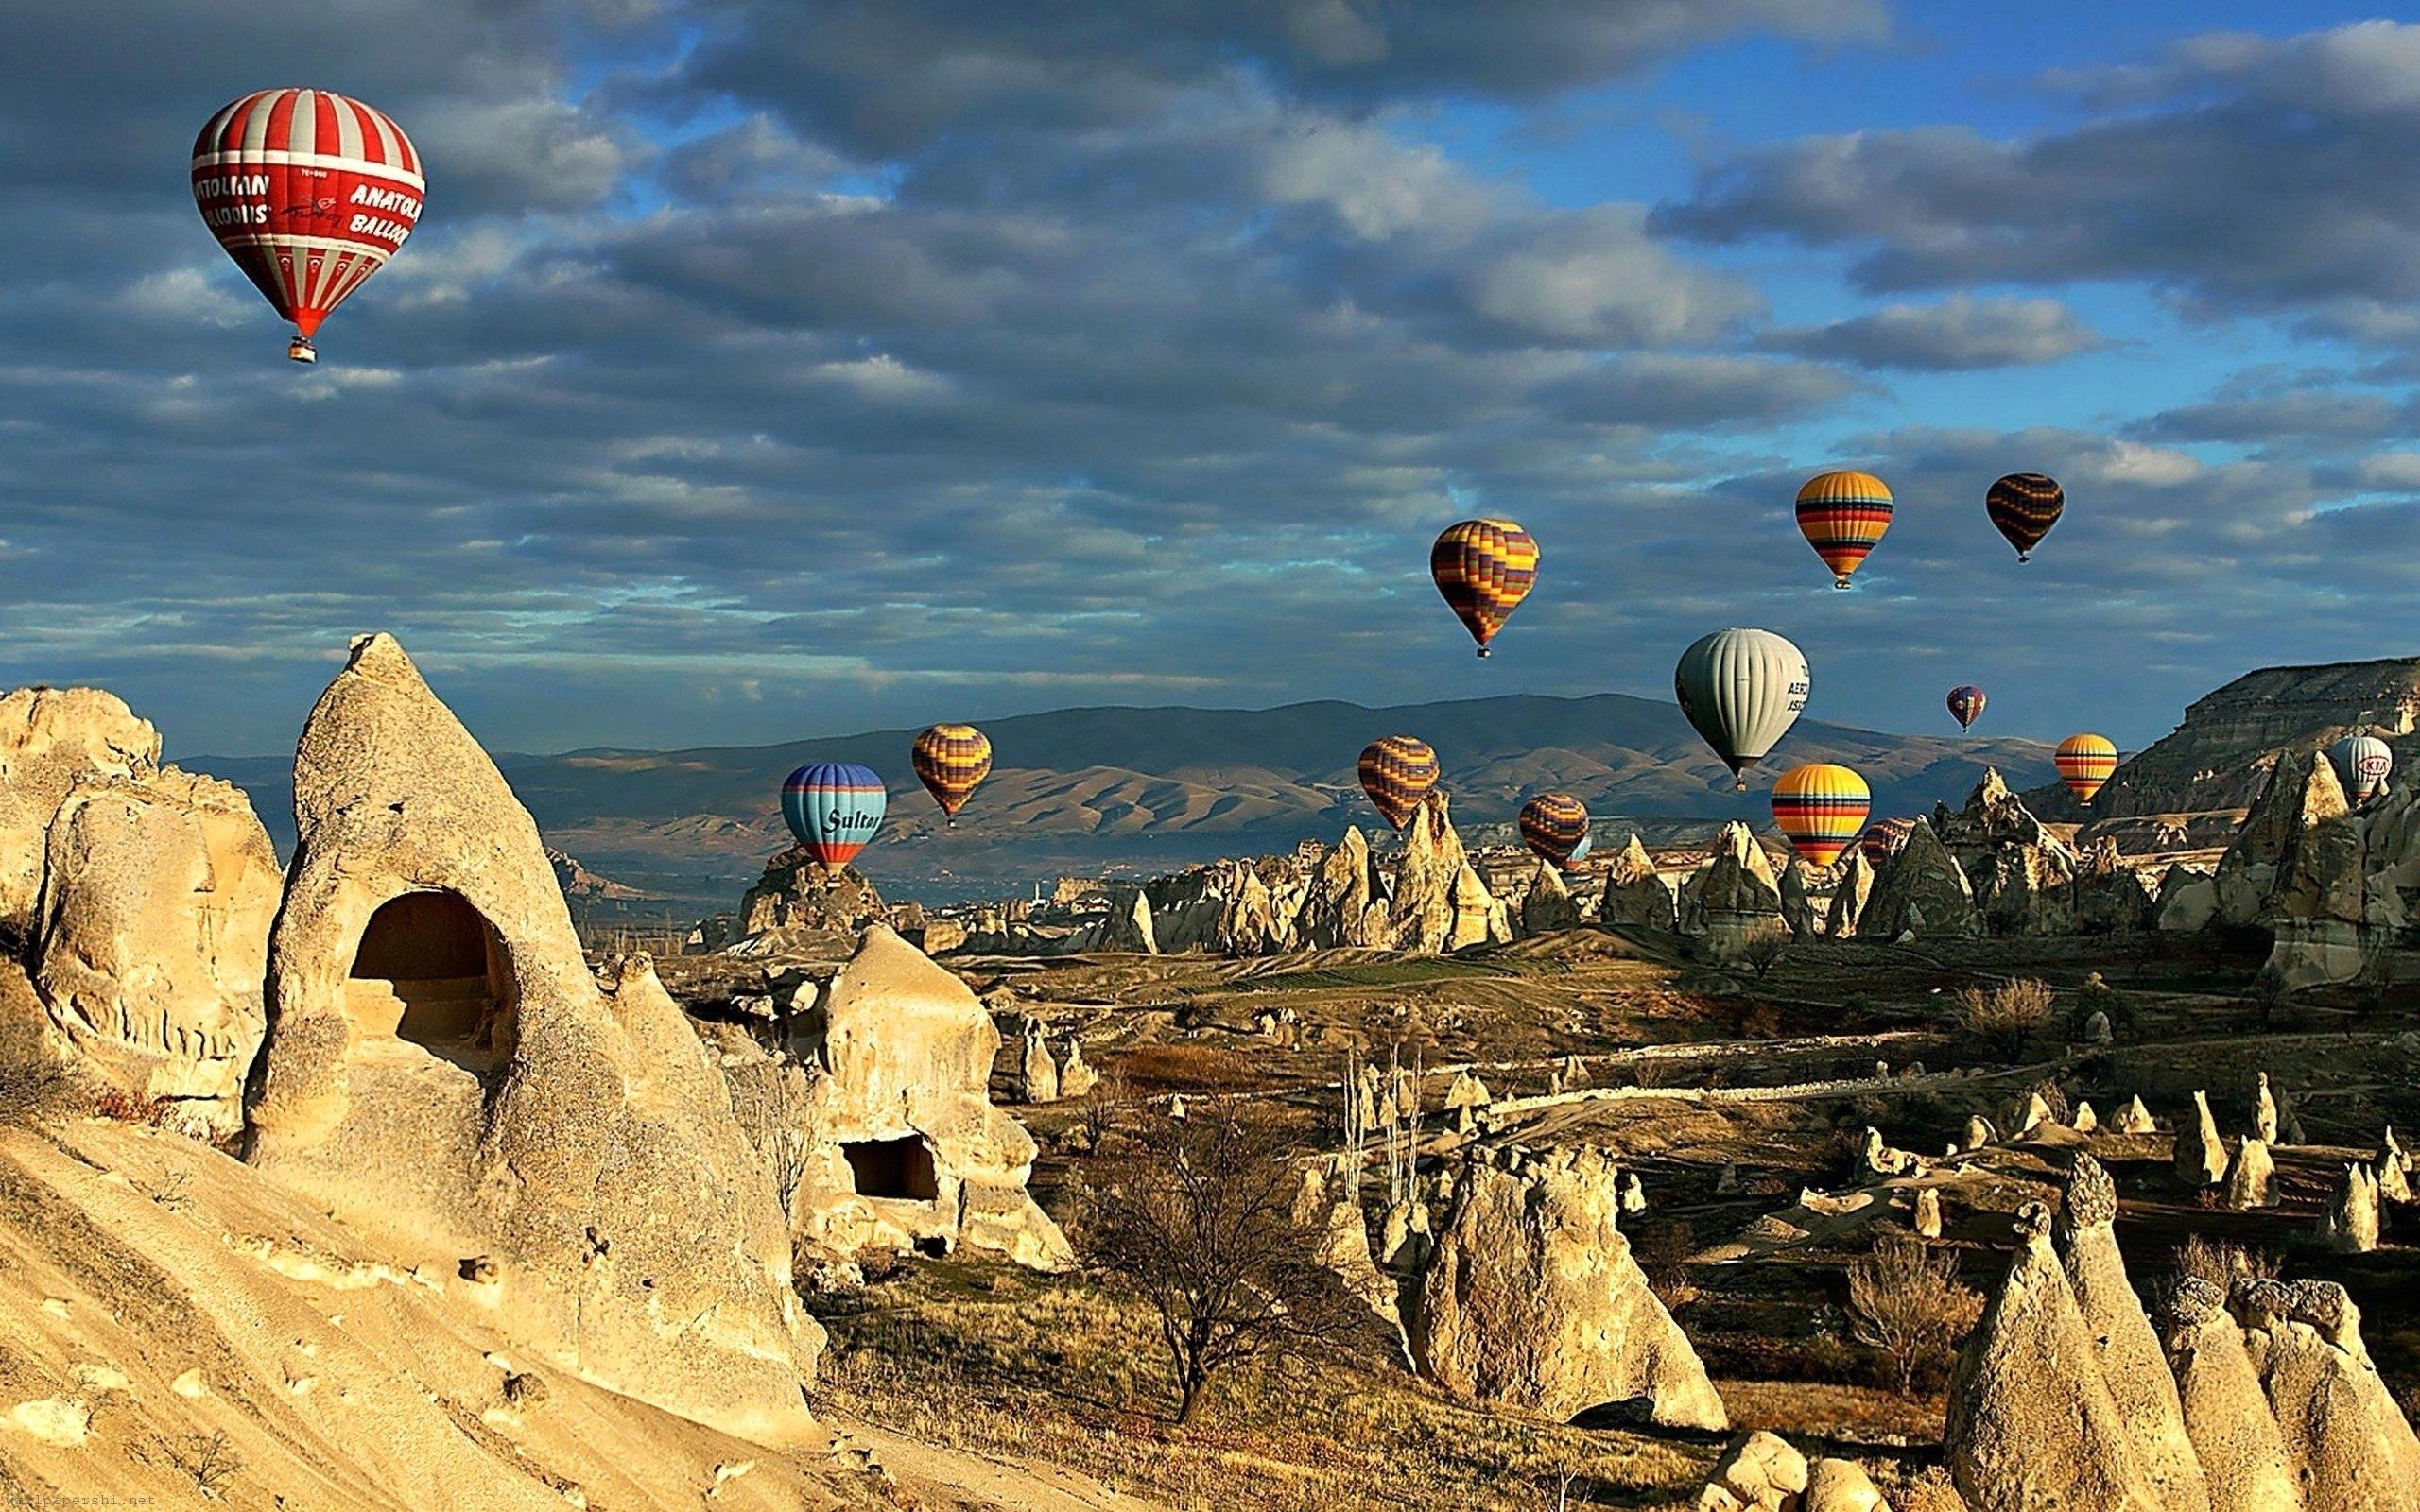 Turkey Desktop Wallpaper (best Turkey Desktop Wallpaper and image) on WallpaperChat